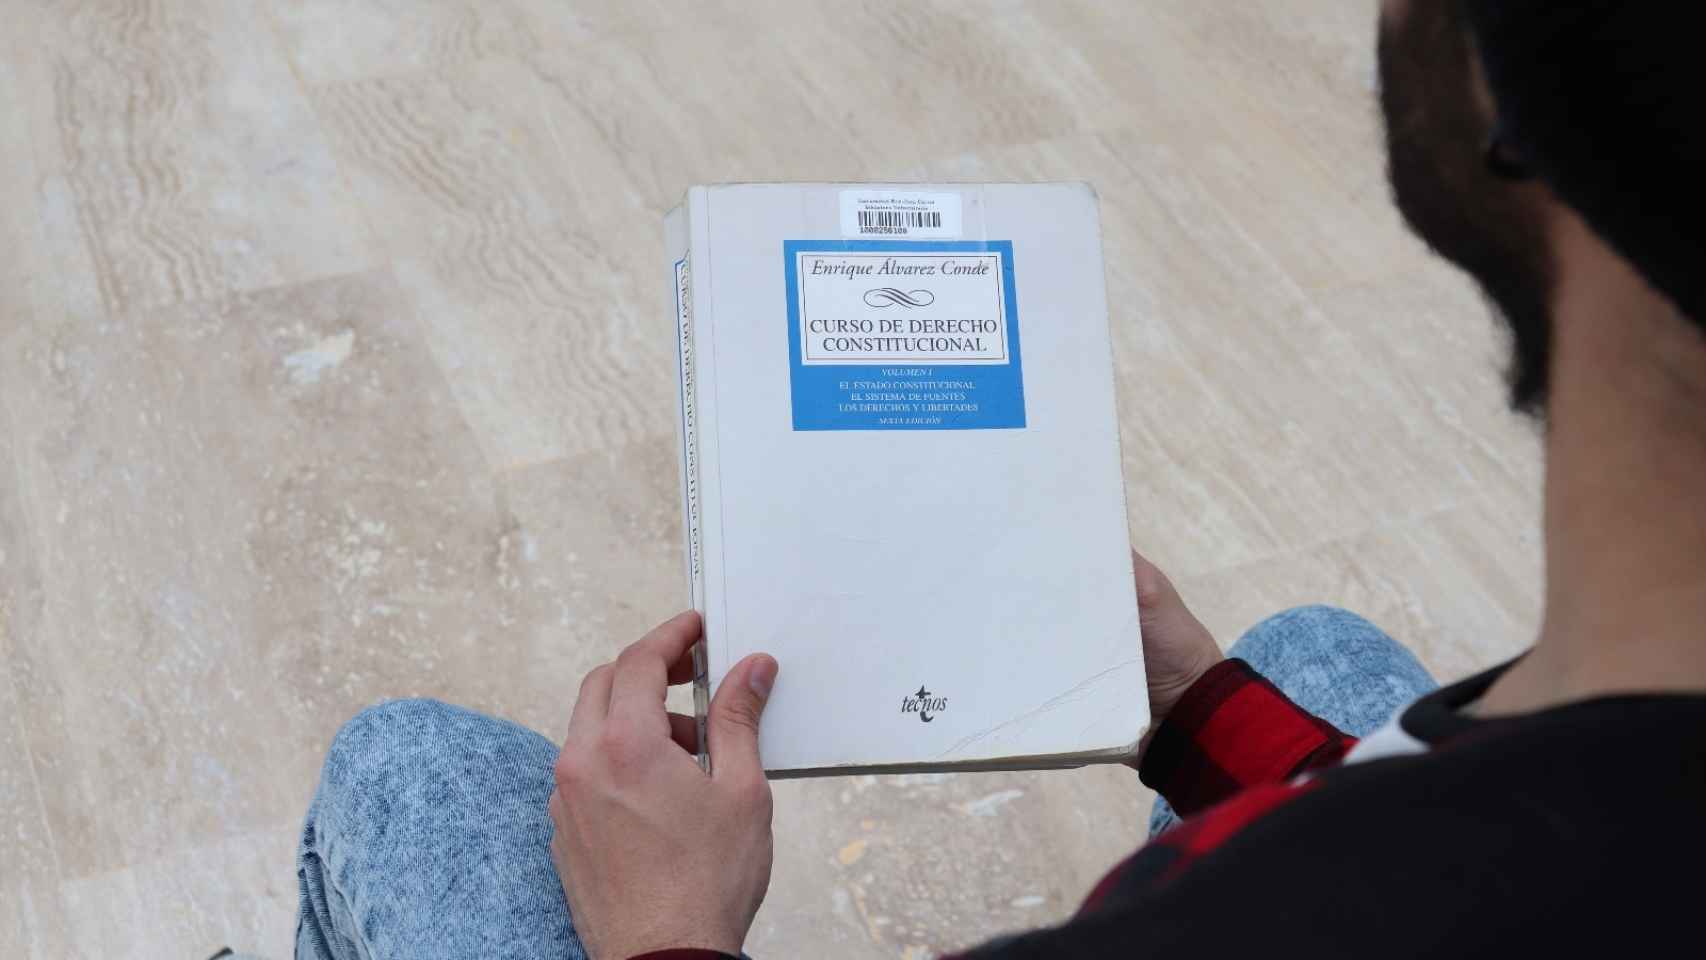 El manual de Álvarez Conde en manos de un alumno de la URJC.